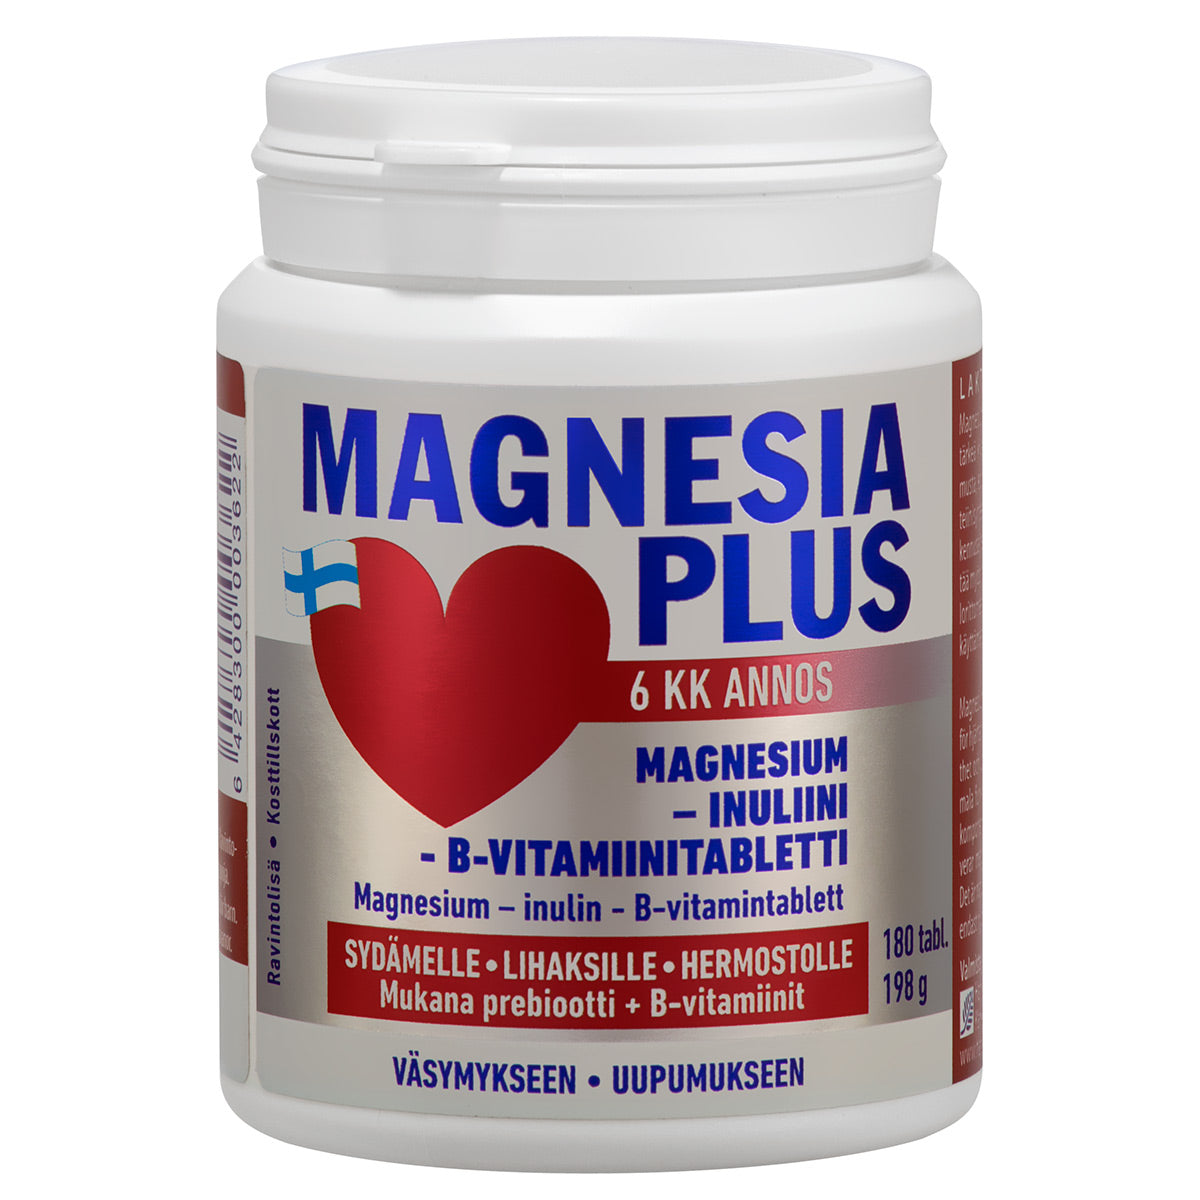 Magnesia Plus-Hankintatukku-Hyvinvoinnin Tavaratalo